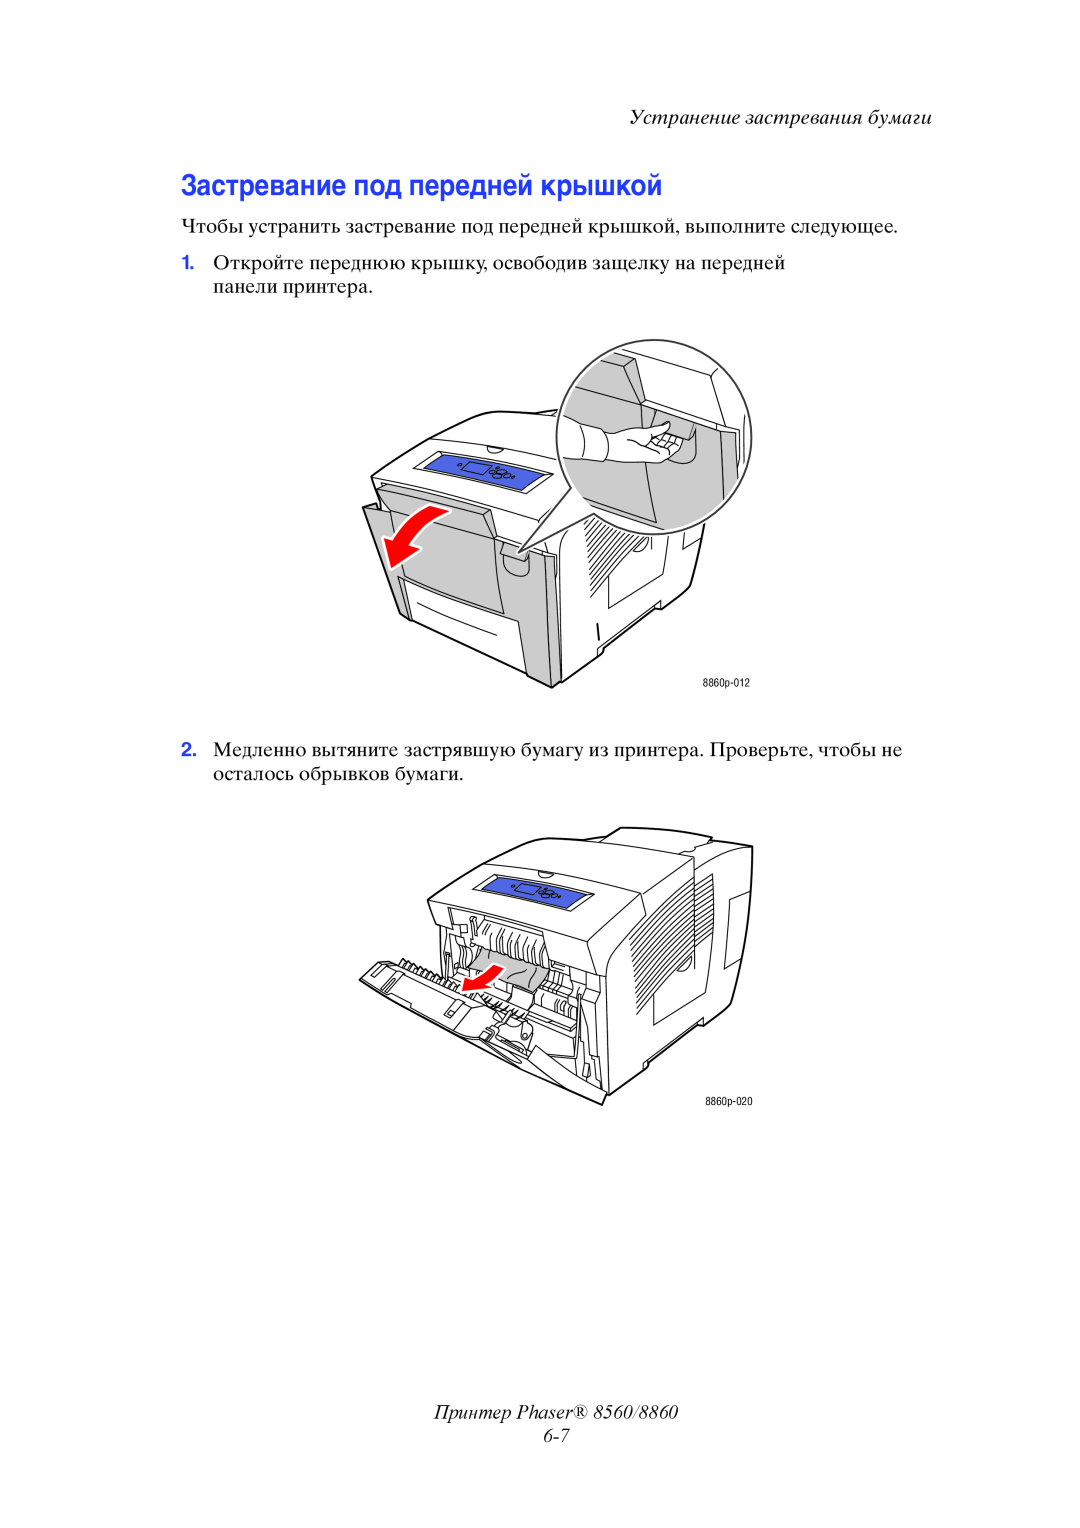 Xerox manual Застревание под передней крышкой, Принтер Phaser 8560/8860 6-7, Устранение застревания бумаги 